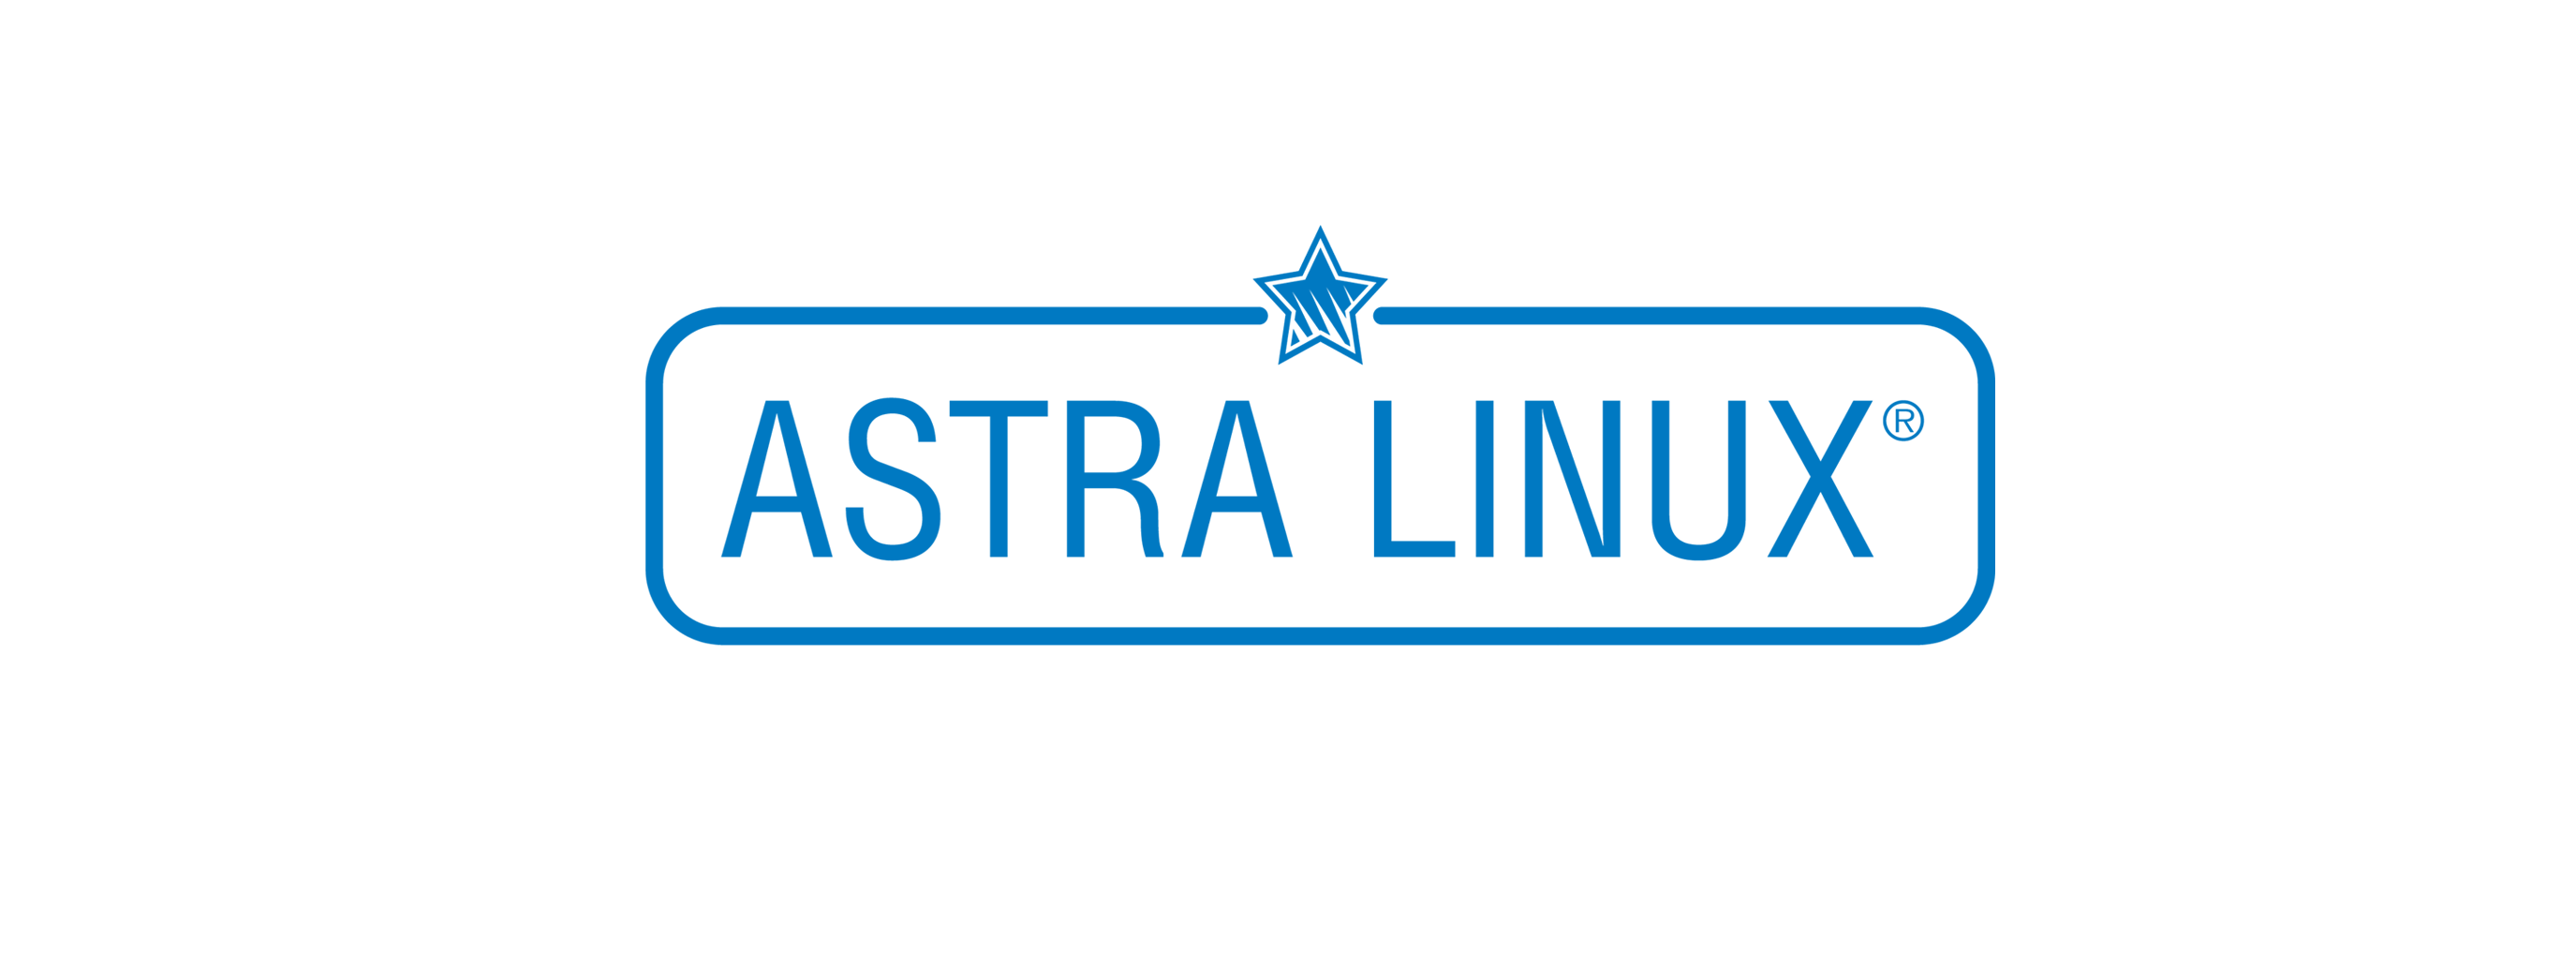 Лицензия РусБИТех Astra Linux Special Edition (очередное обновление 1.7), уровень защищенности Максимальный (Смоленск), РУСБ.10015-17 (ФСБ)